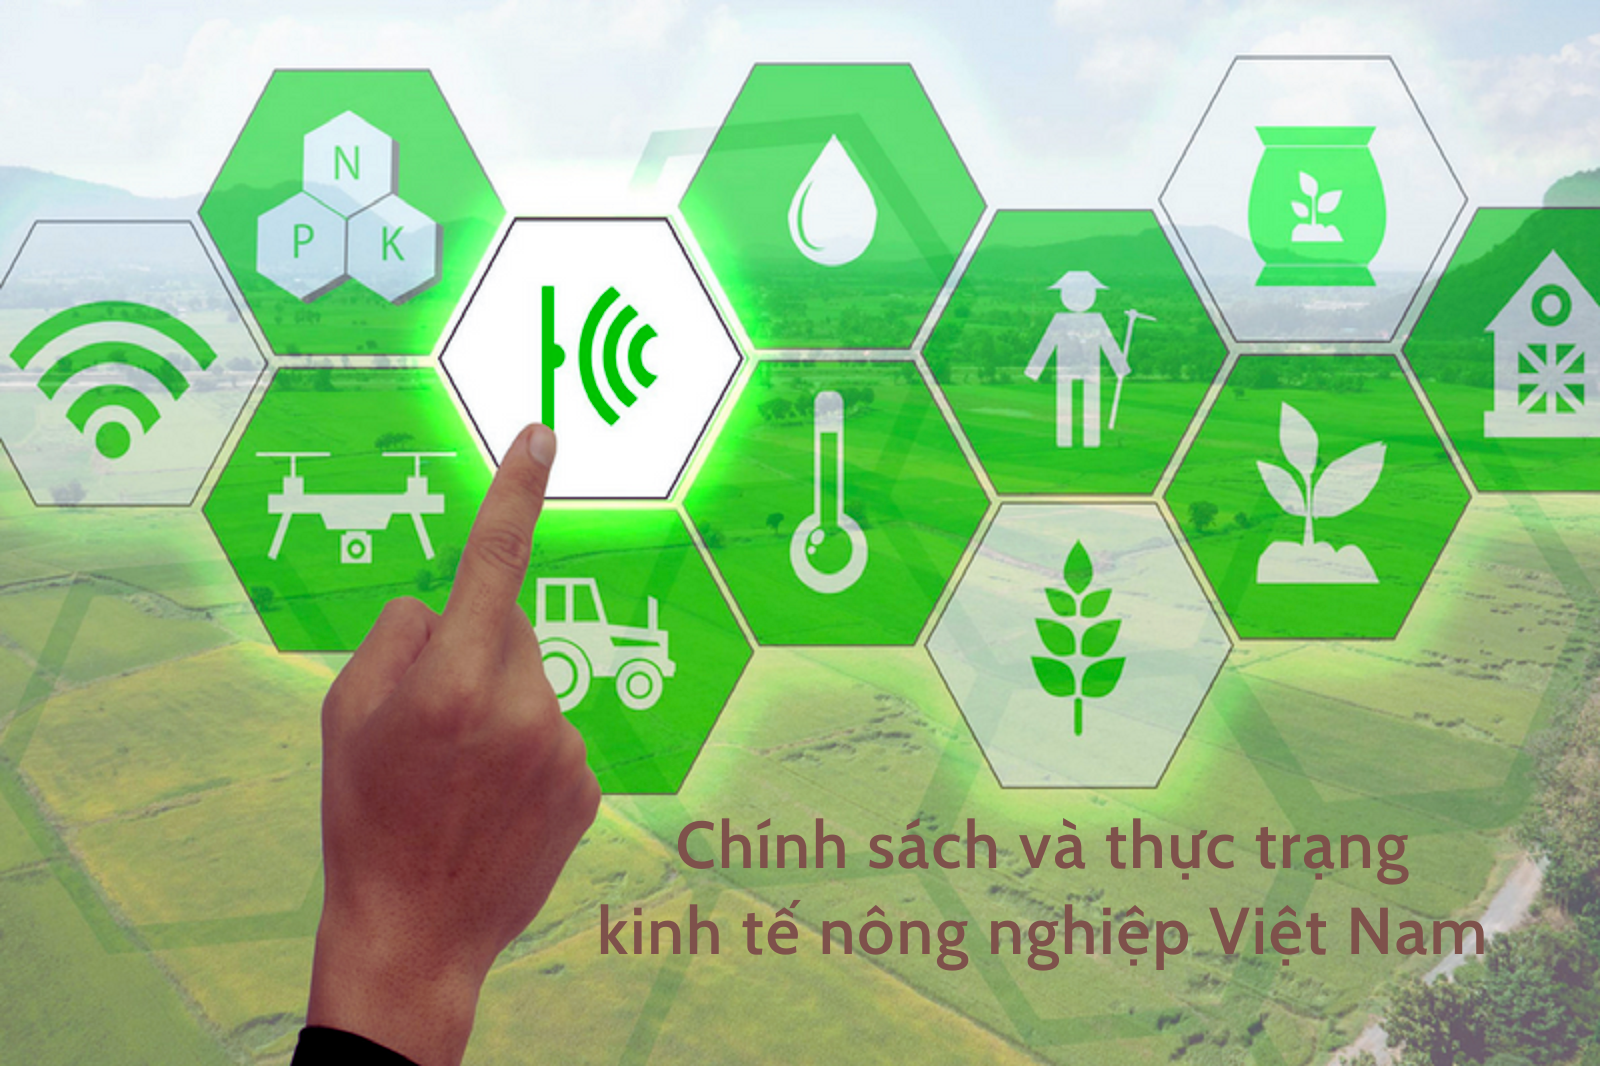 Chính sách và thực trạng kinh tế Nông nghiệp Việt Nam